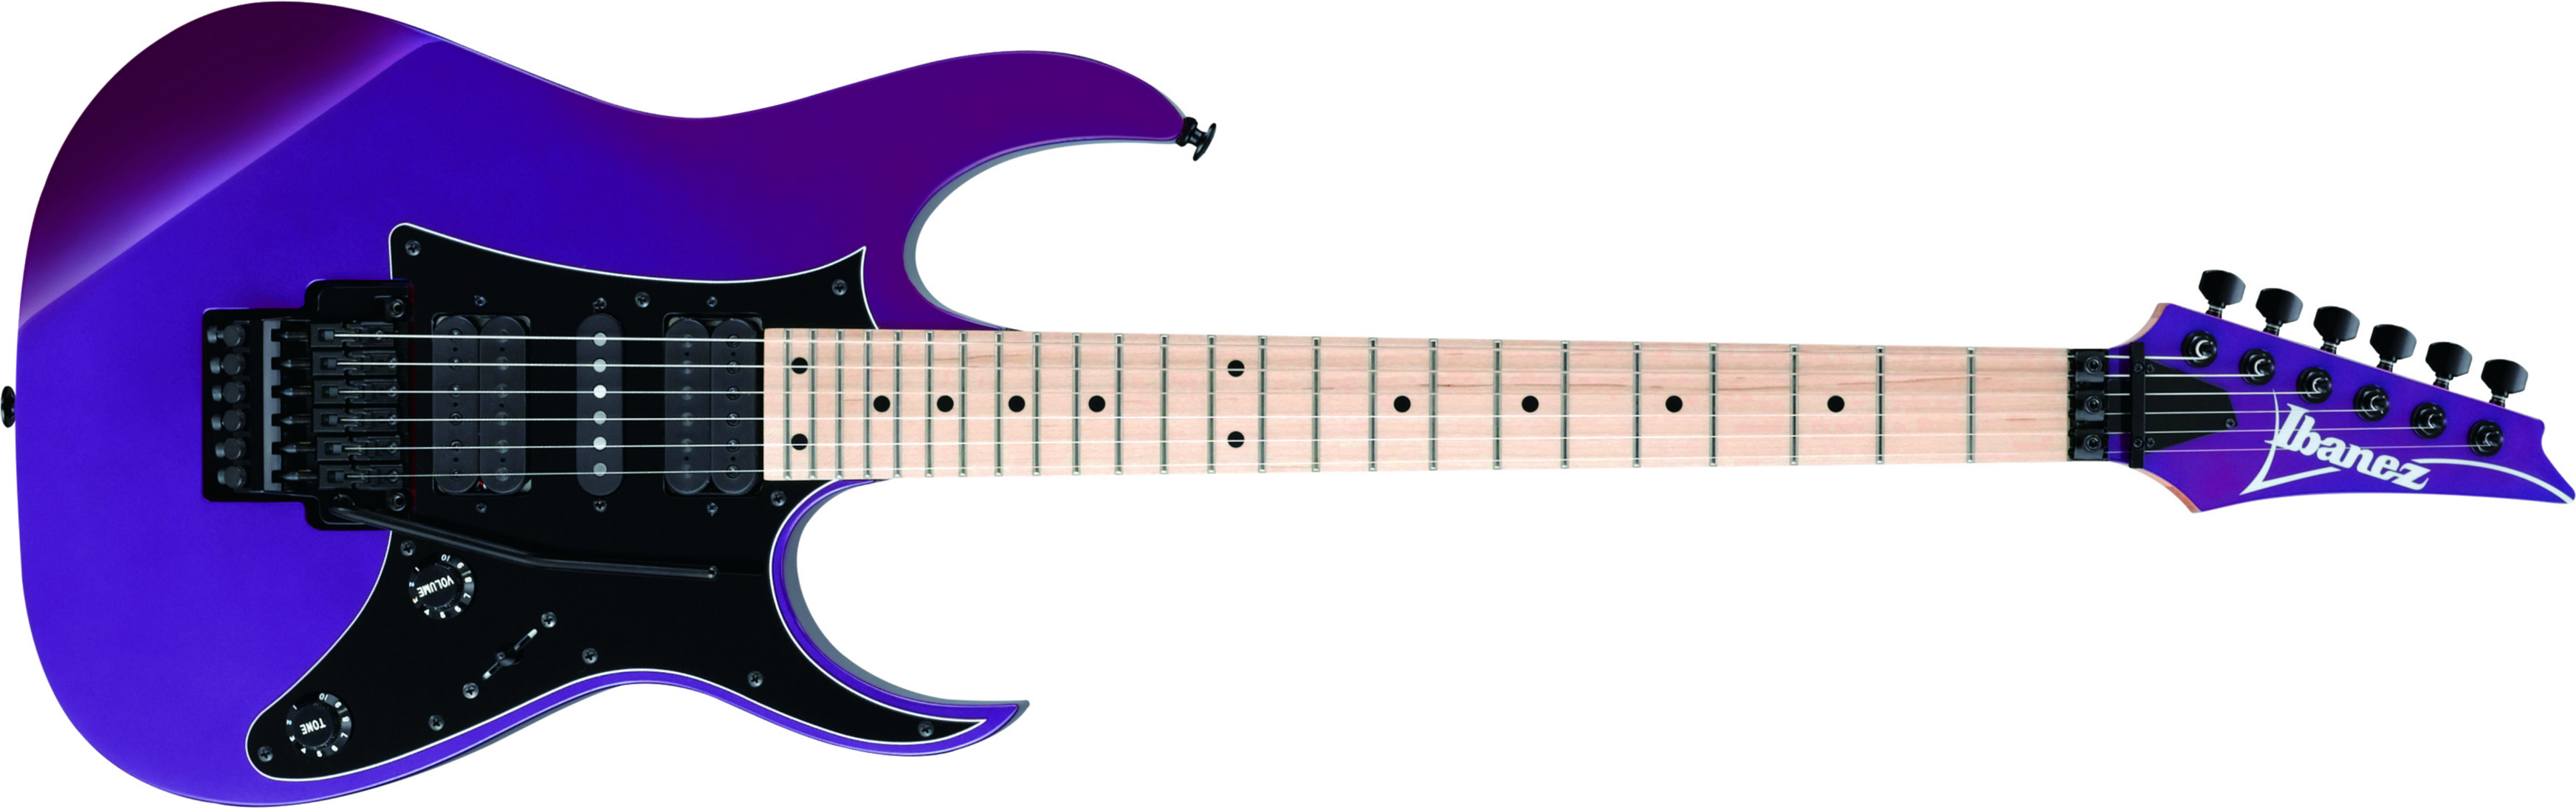 Ibanez Rg550 Pn Genesis Japon Hsh Fr Mn - Purple Neon - Guitarra eléctrica con forma de str. - Main picture